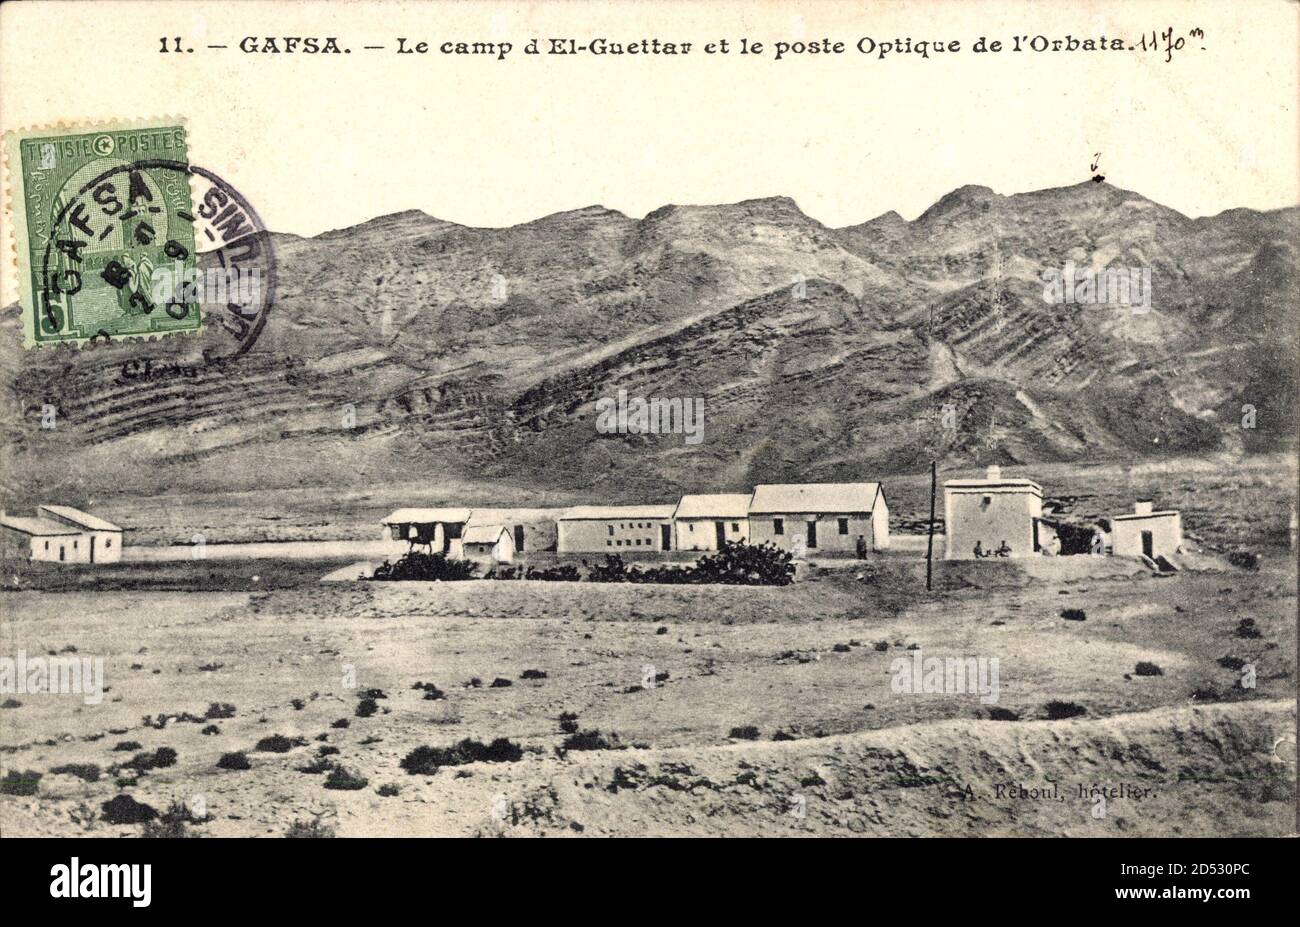 Gafsa Tunesien, Le camp d'El Guettar et le poste Optique de l'Orbata | usage worldwide Stock Photo